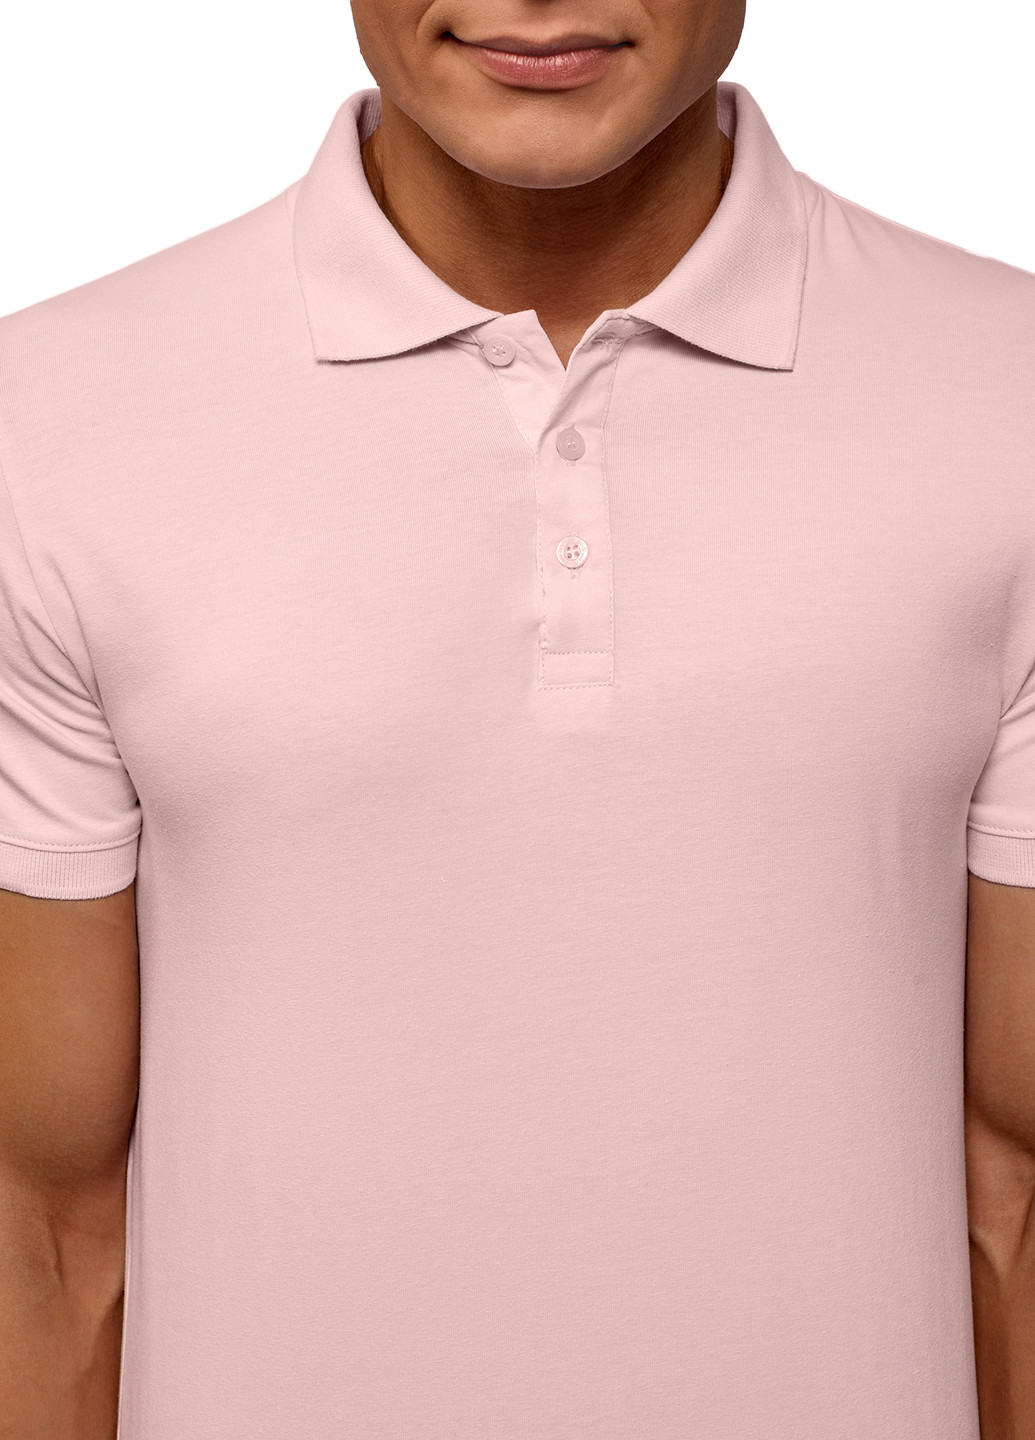 Светло-розовая футболка-поло для мужчин Oodji